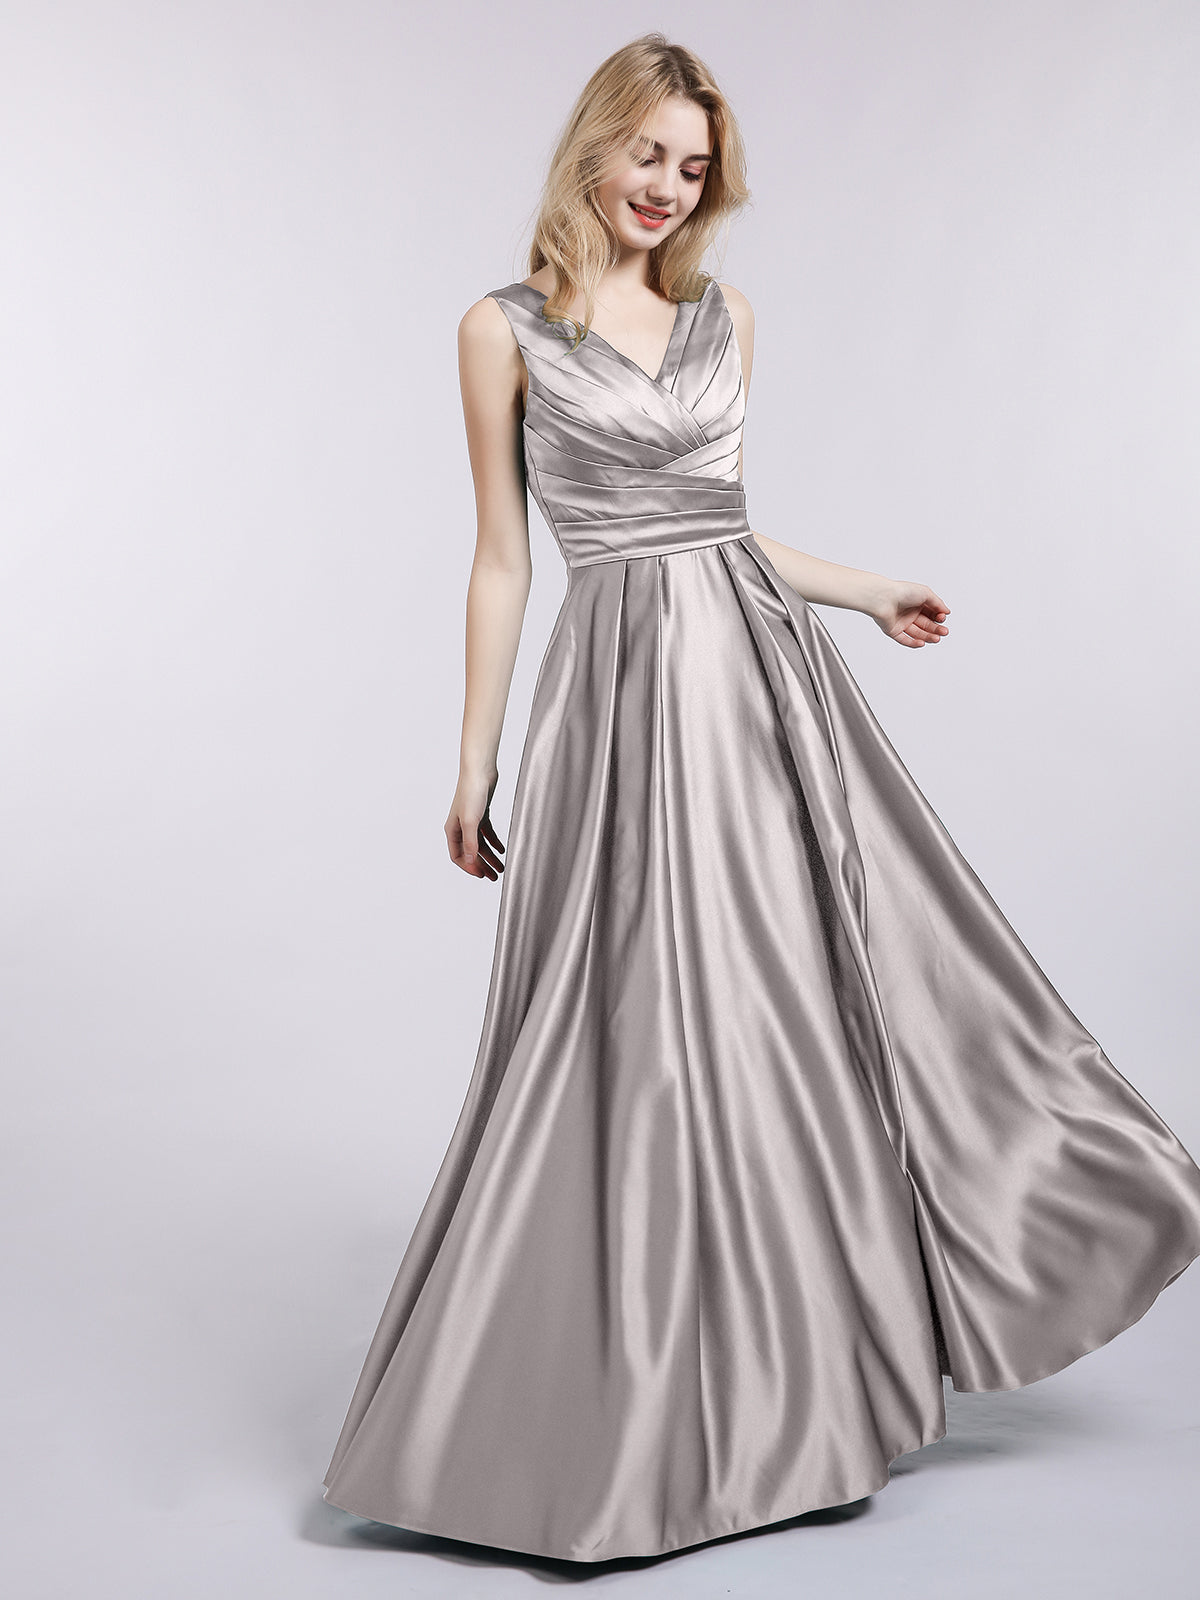 Silver Plus Size Dresses